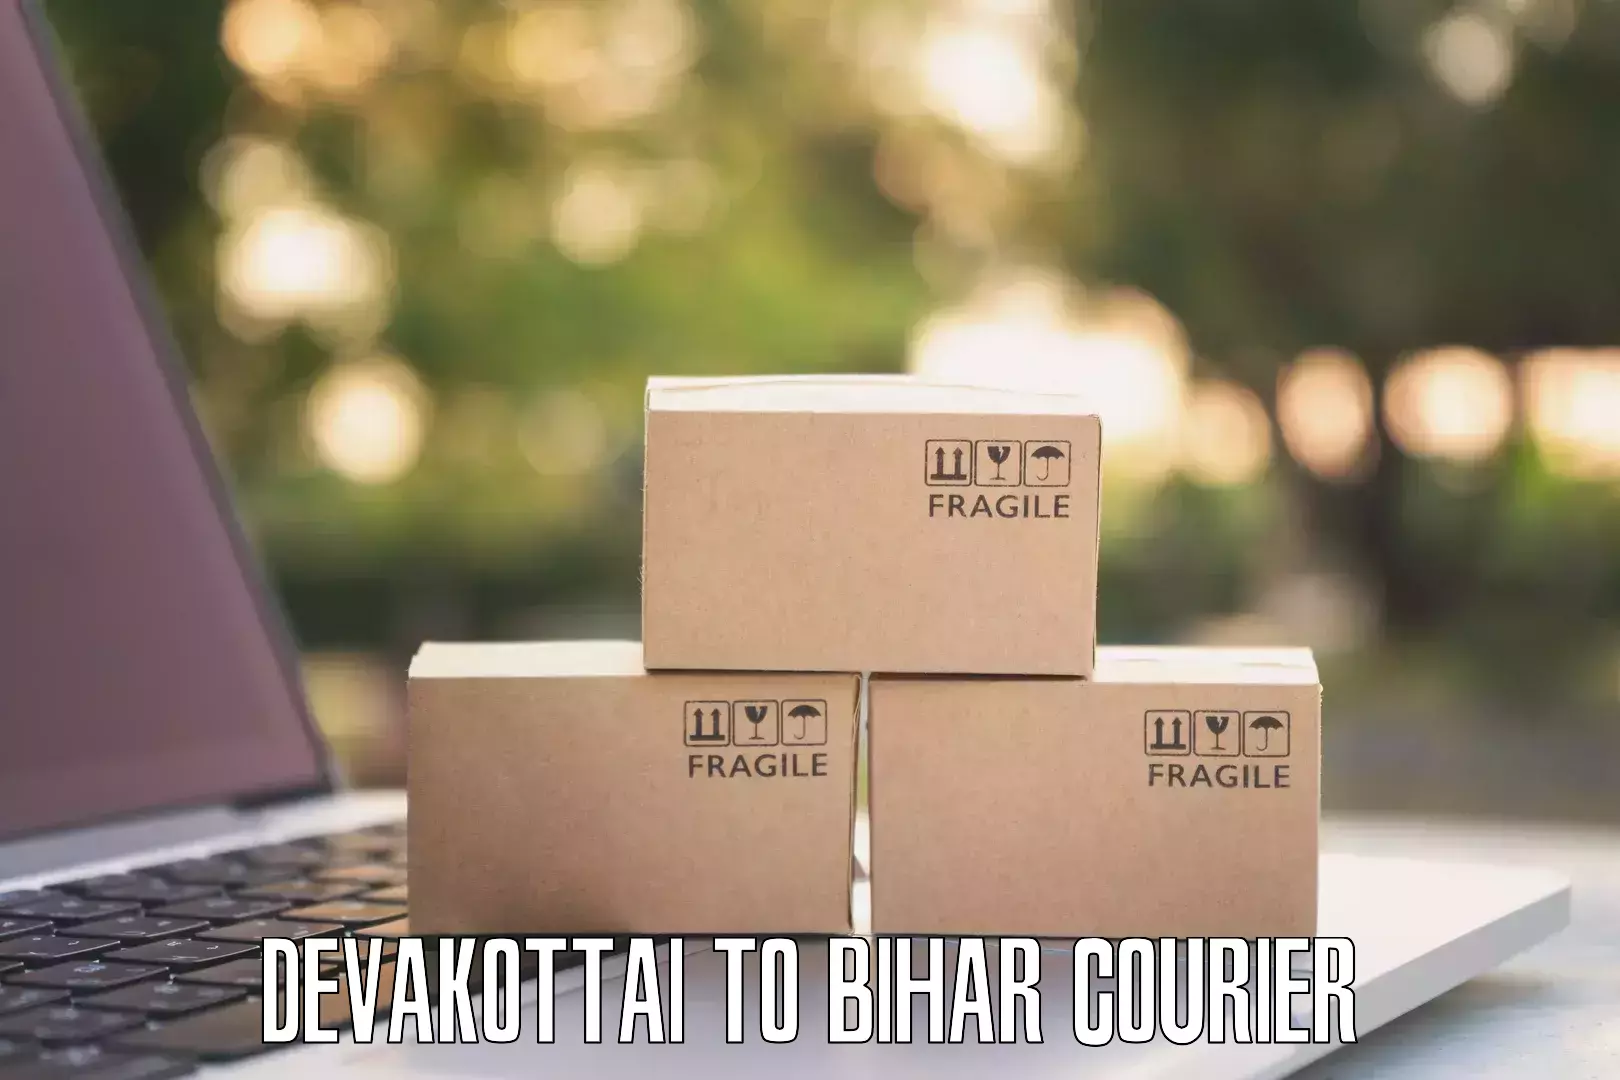 Bulk shipment Devakottai to Kishunganj